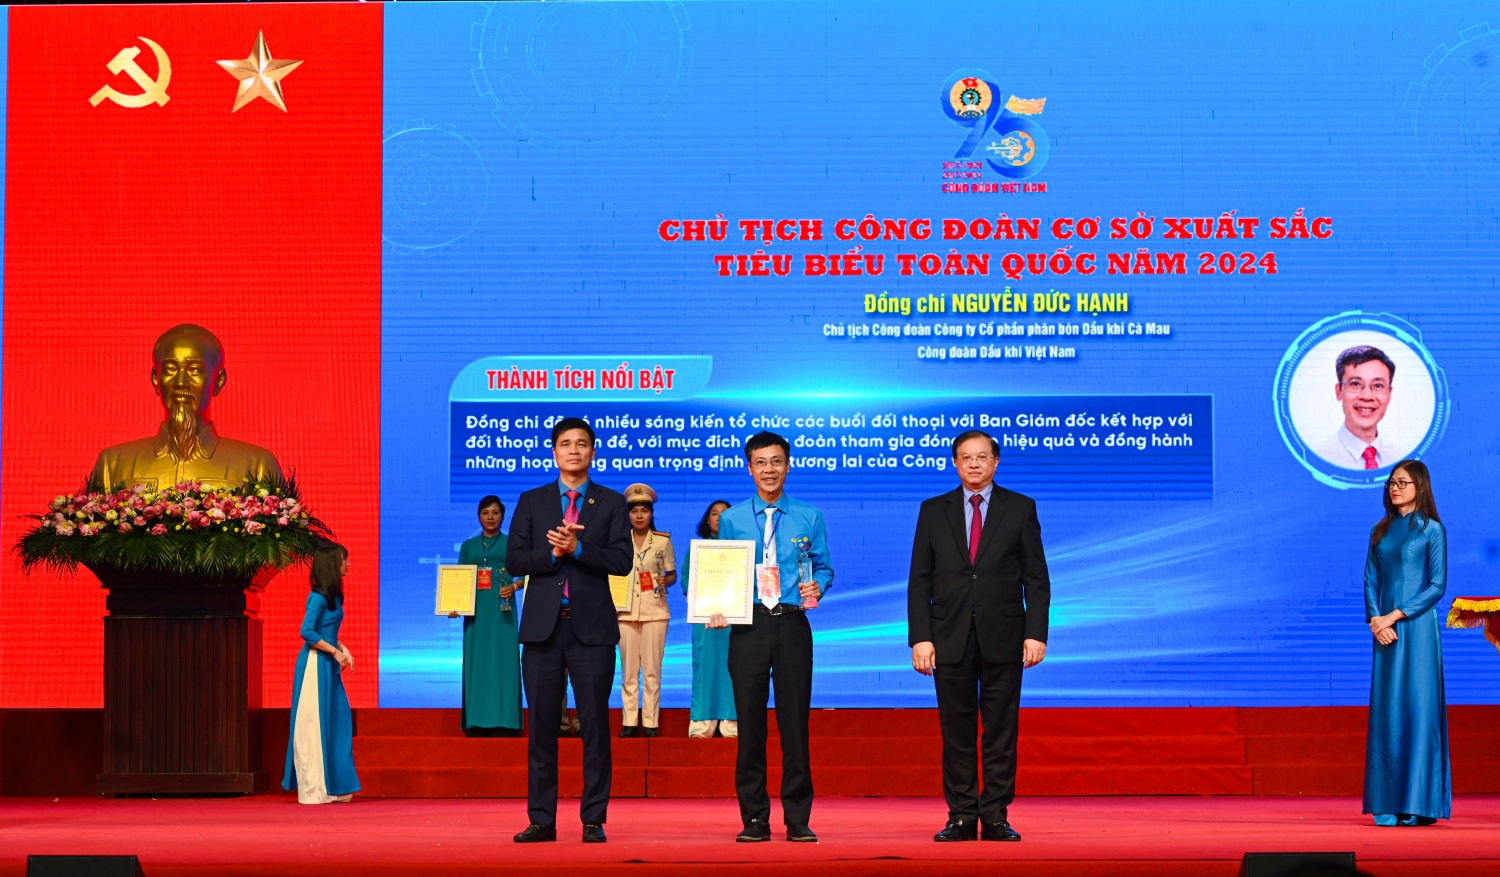 Chủ tịch Công đoàn PVCFC Nguyễn Đức Hạnh được tuyên dương Chủ tịch CĐCS xuất sắc, tiêu biểu toàn quốc